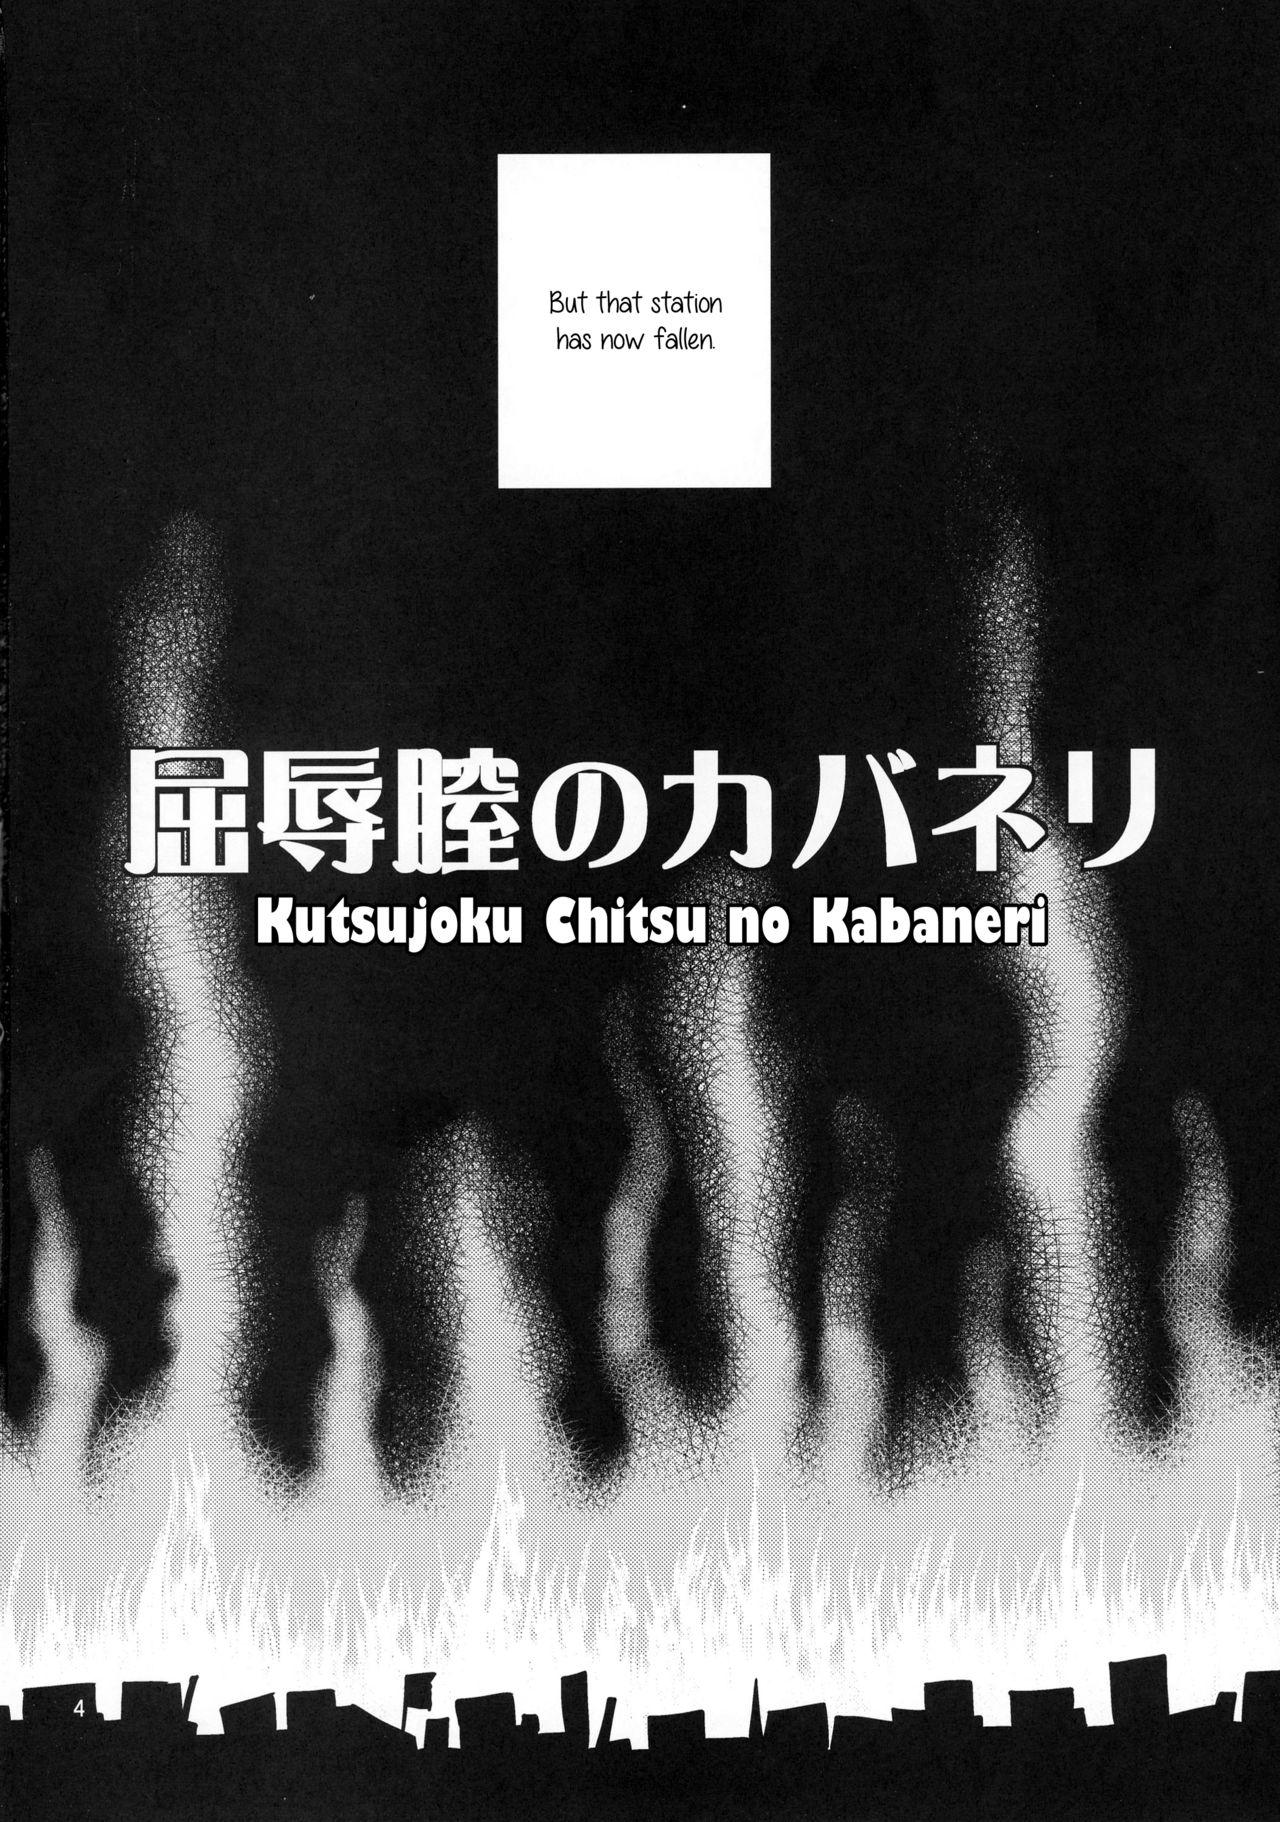 Best Blowjob Kutsujoku Chitsu no Kabaneri - Koutetsujou no kabaneri Pegging - Page 4